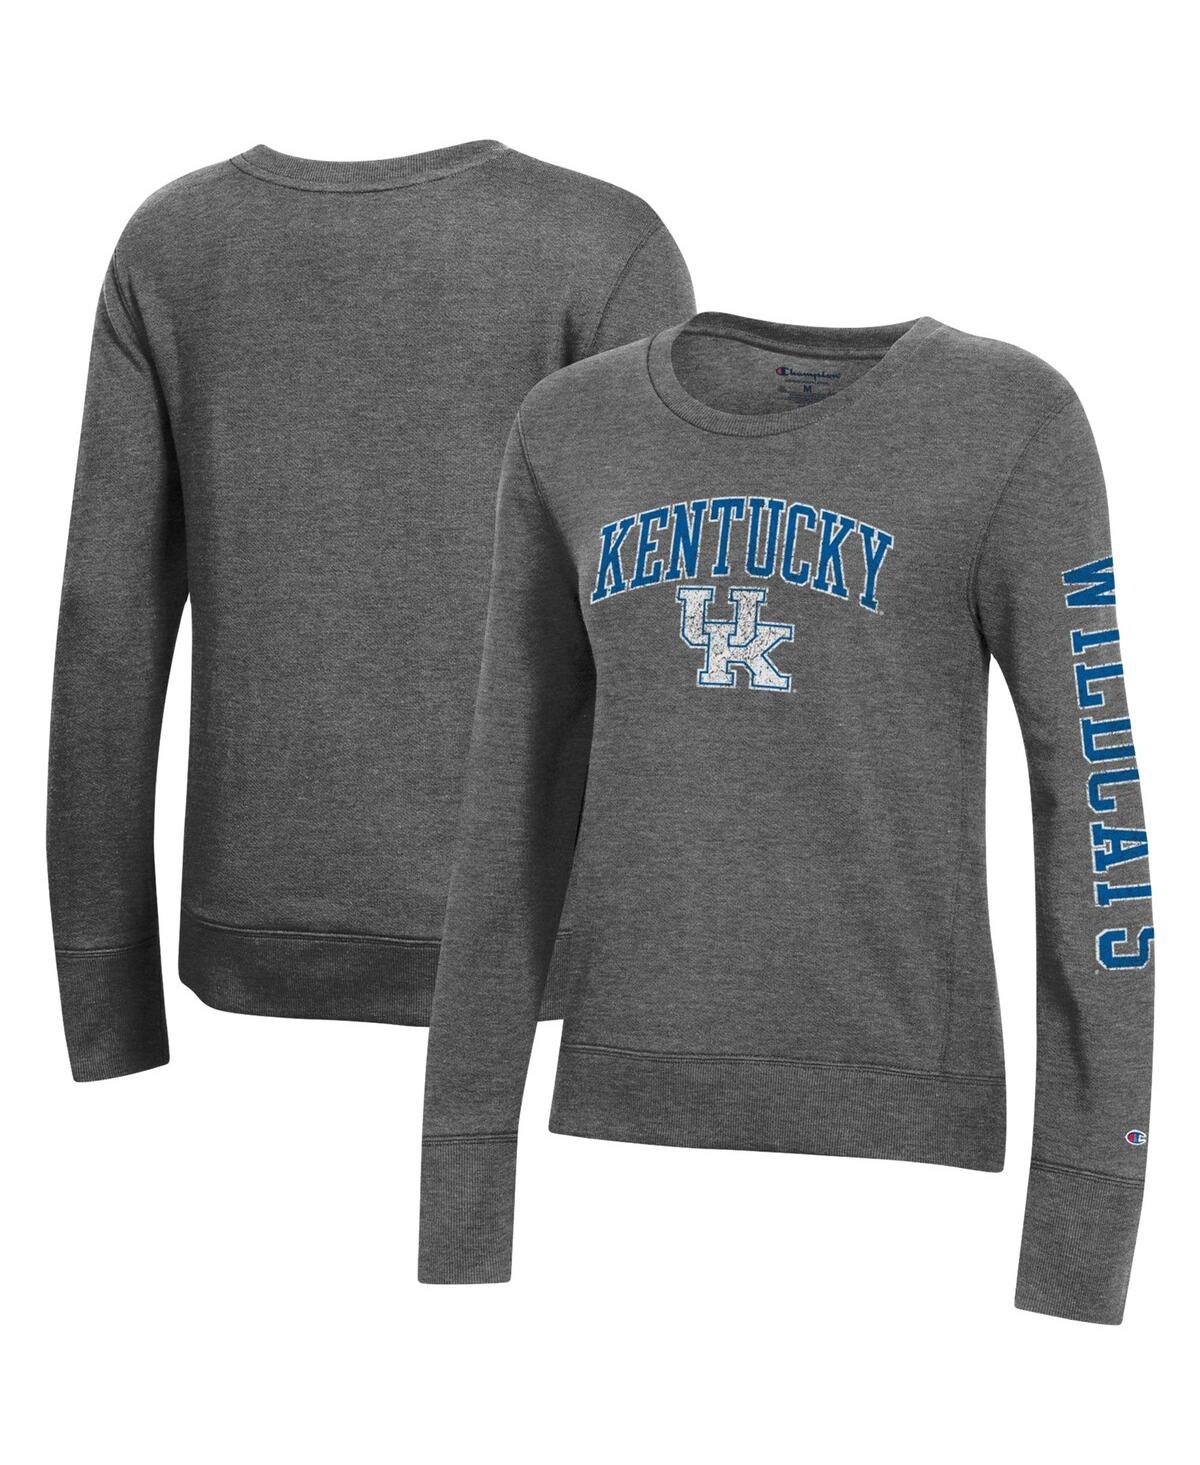 Shop Champion Women's  Heathered Charcoal Kentucky Wildcats University 2.0 Fleece Sweatshirt